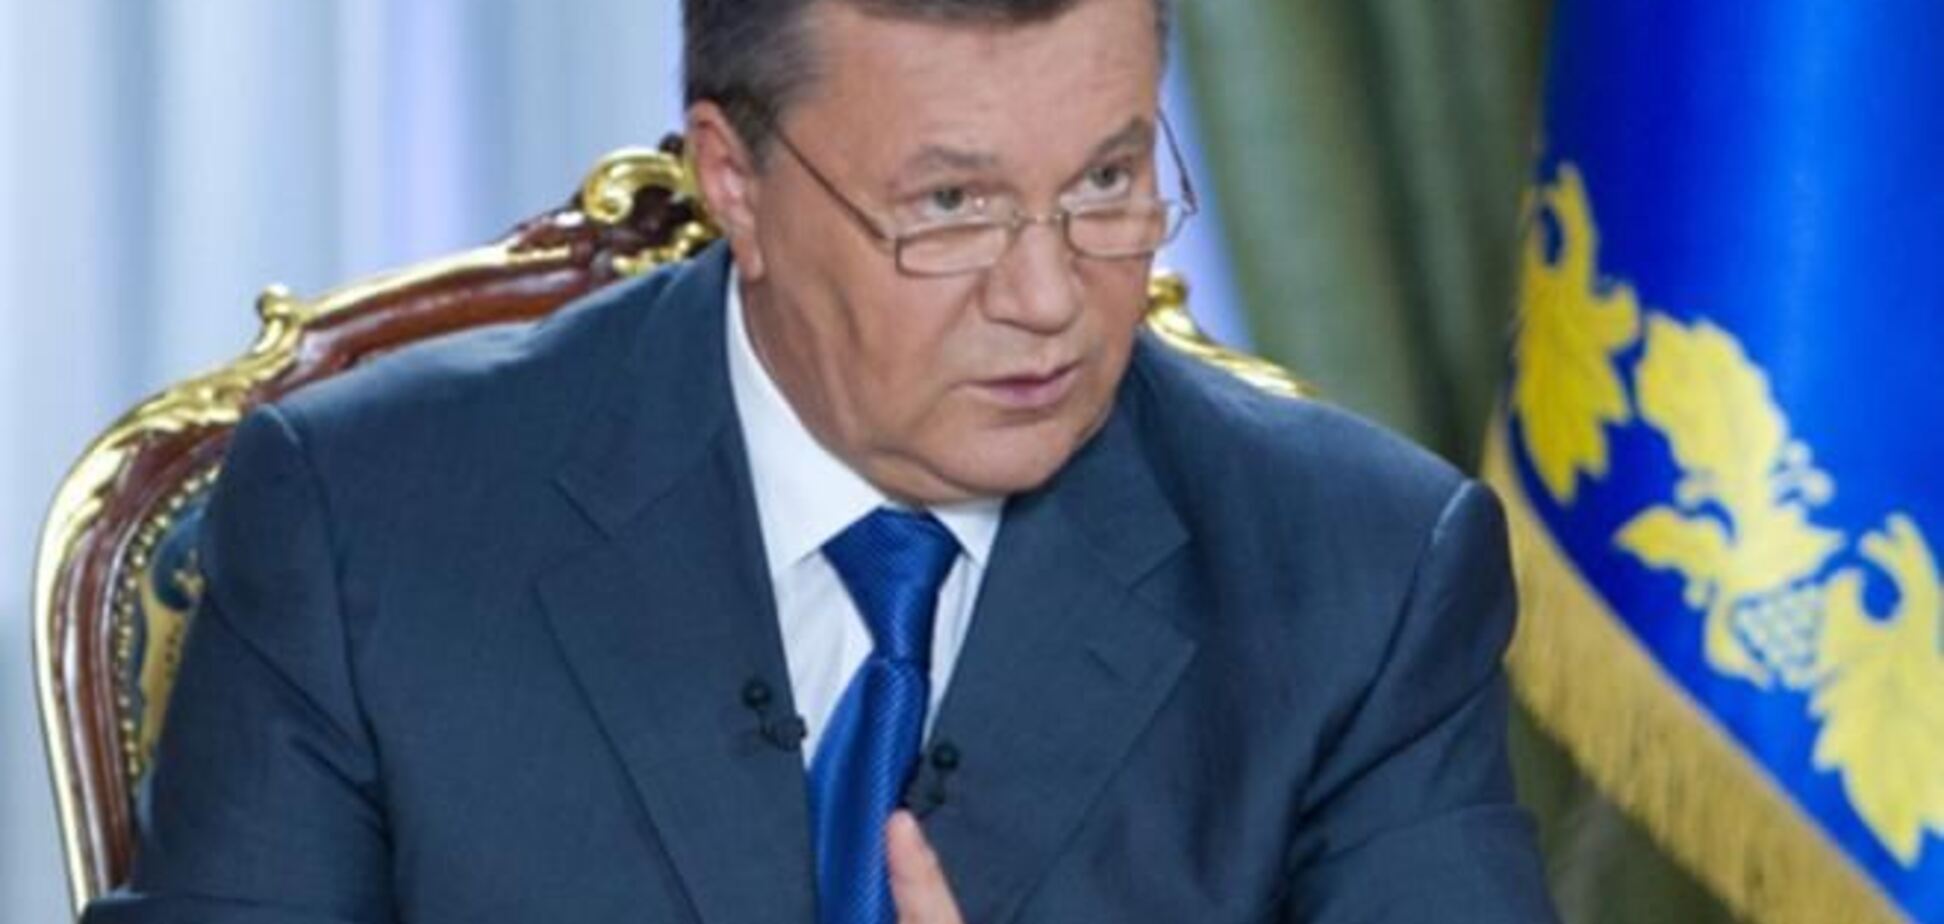 Вечером в пятницу украинские телеканалы покажут интервью Януковича